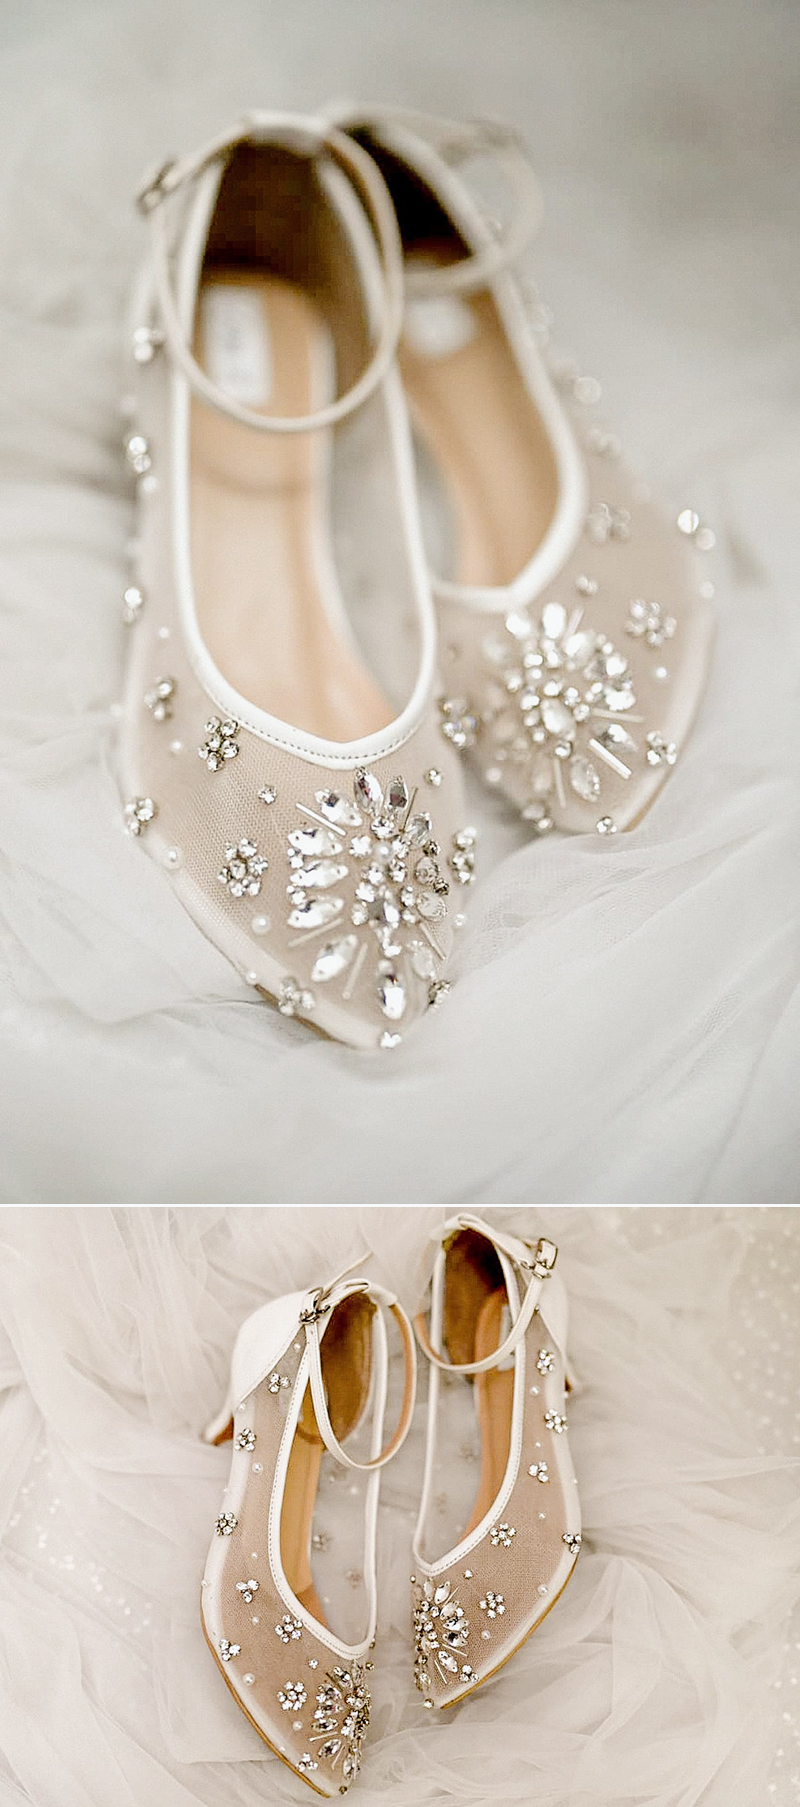 comfortable low heels for wedding